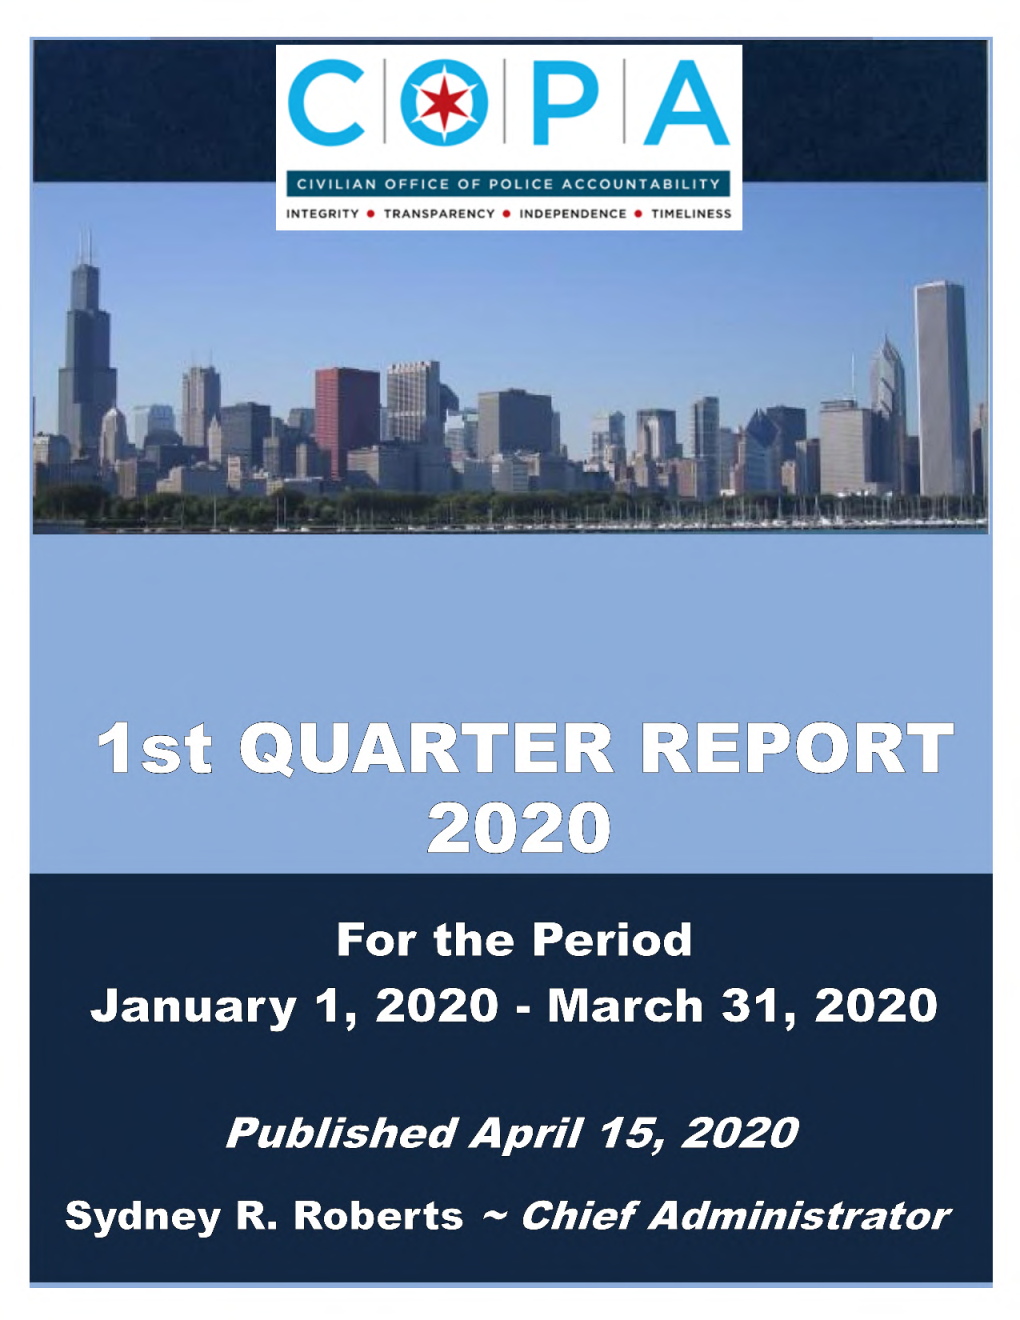 COPA Q1 2020 Quarterly Report